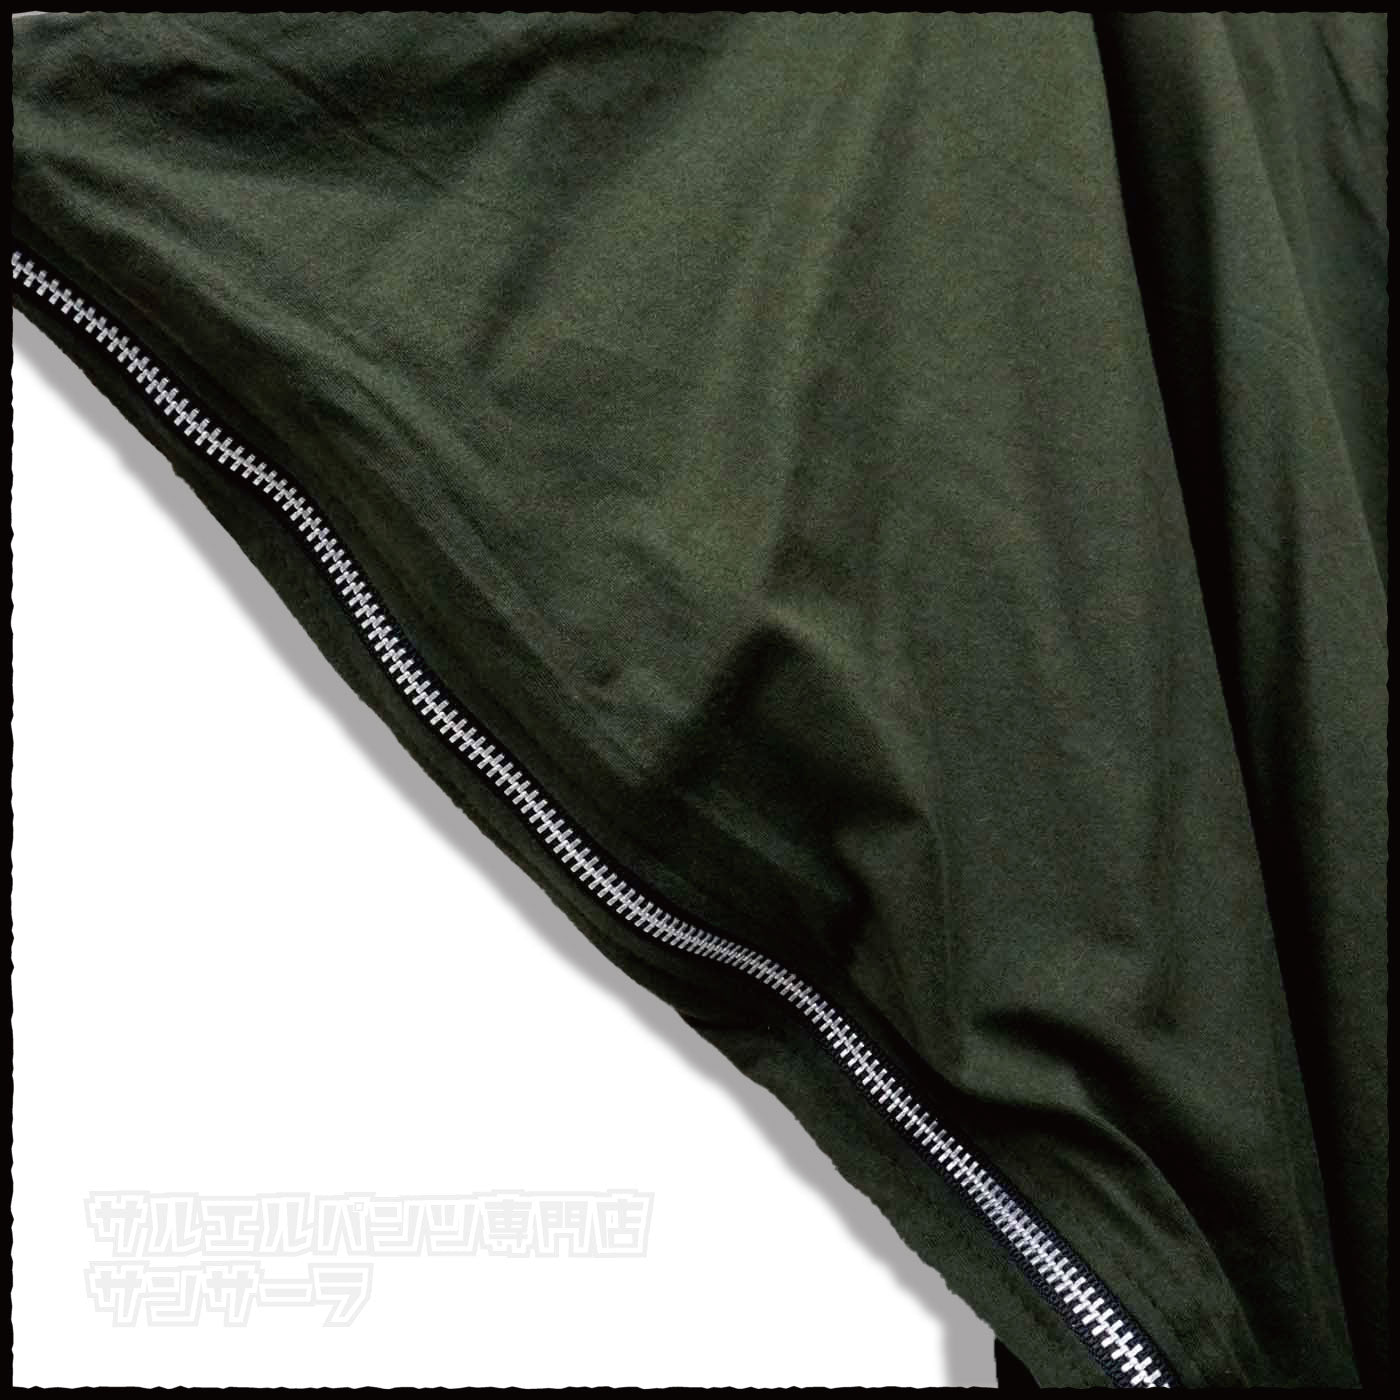 パーカー ポンチョ ドルマン メンズ レディース モード系 V系 サロン系 黒 変形アウター 半袖 5分丈 7分丈 韓国 ストリート ファッション チャックブラック